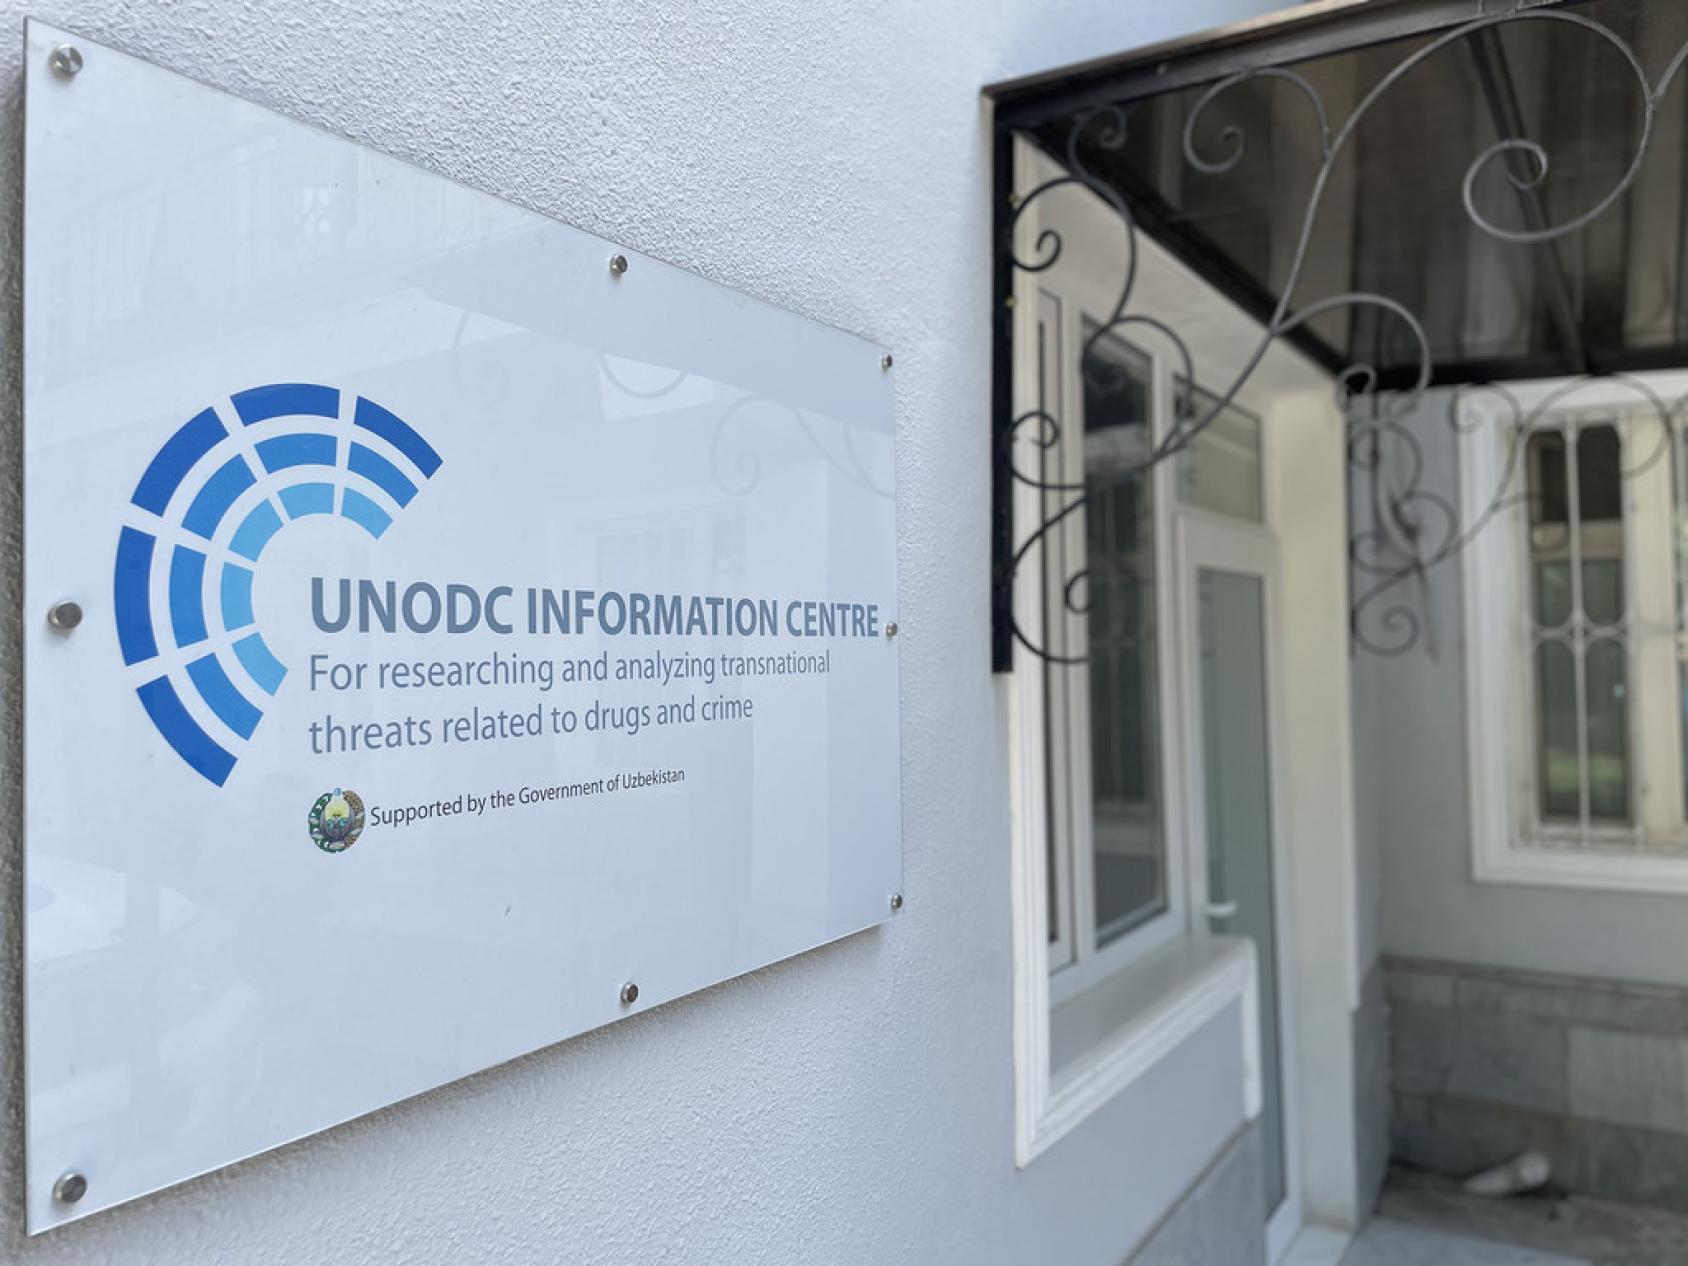 Табличка у входа в UNODC информационный центр на белой стене